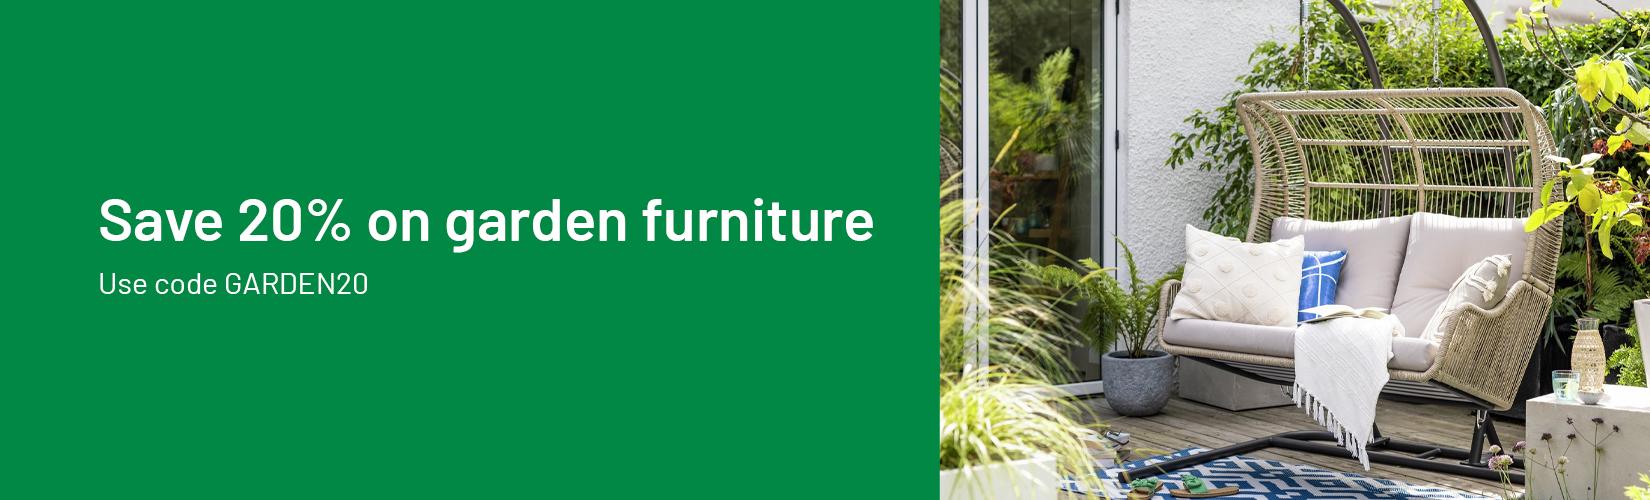 Save 20% on garden furniture. Use code GARDEN20.